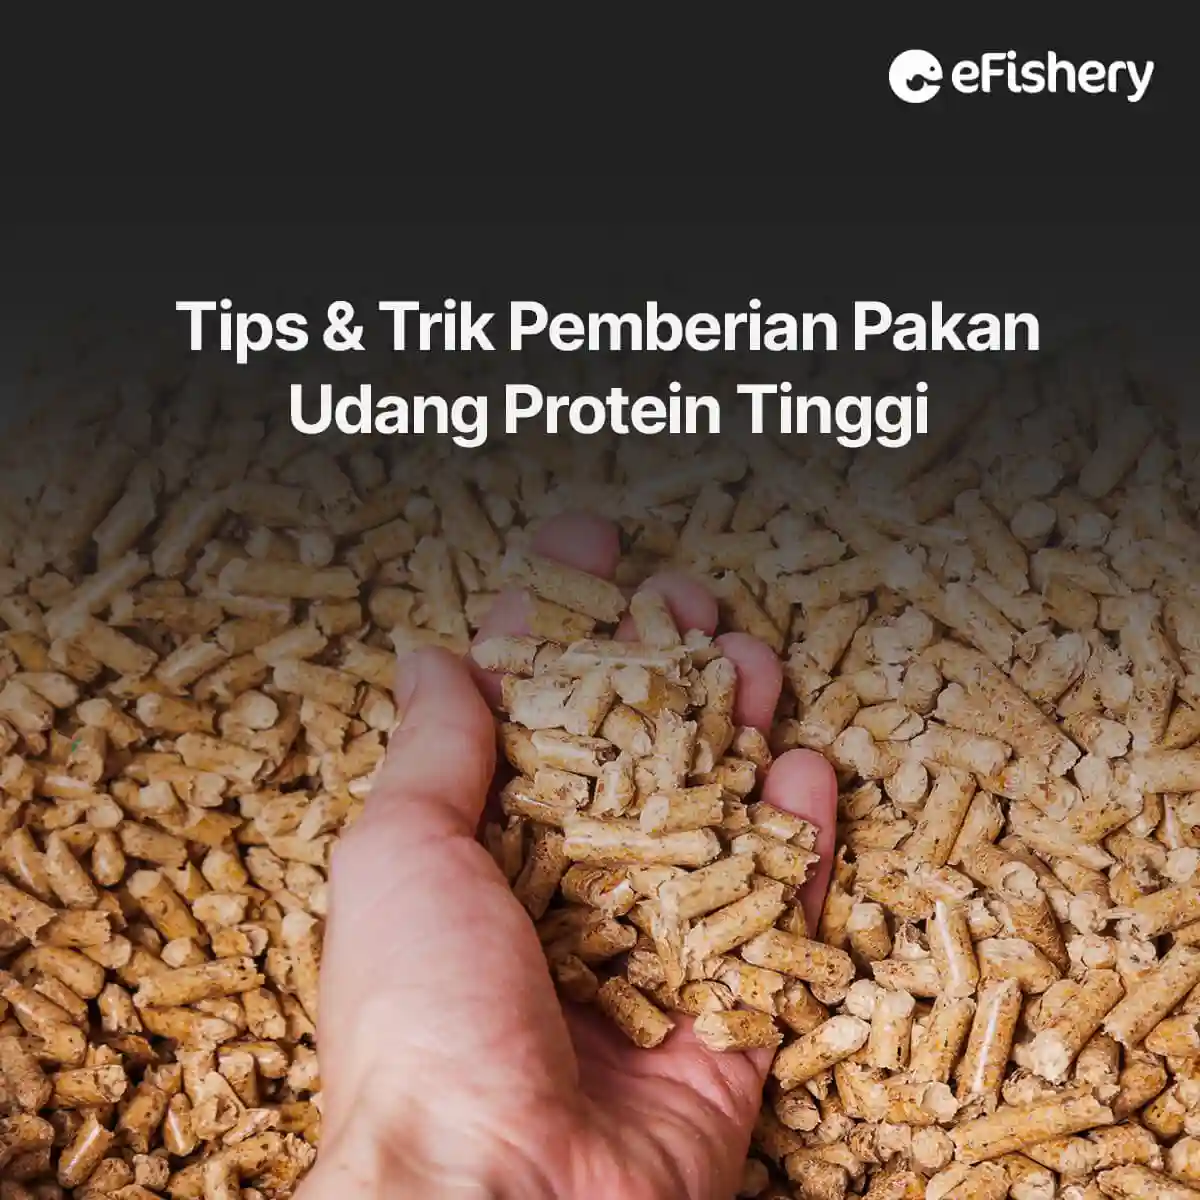 tip pemberian pakan udang protein tinggi